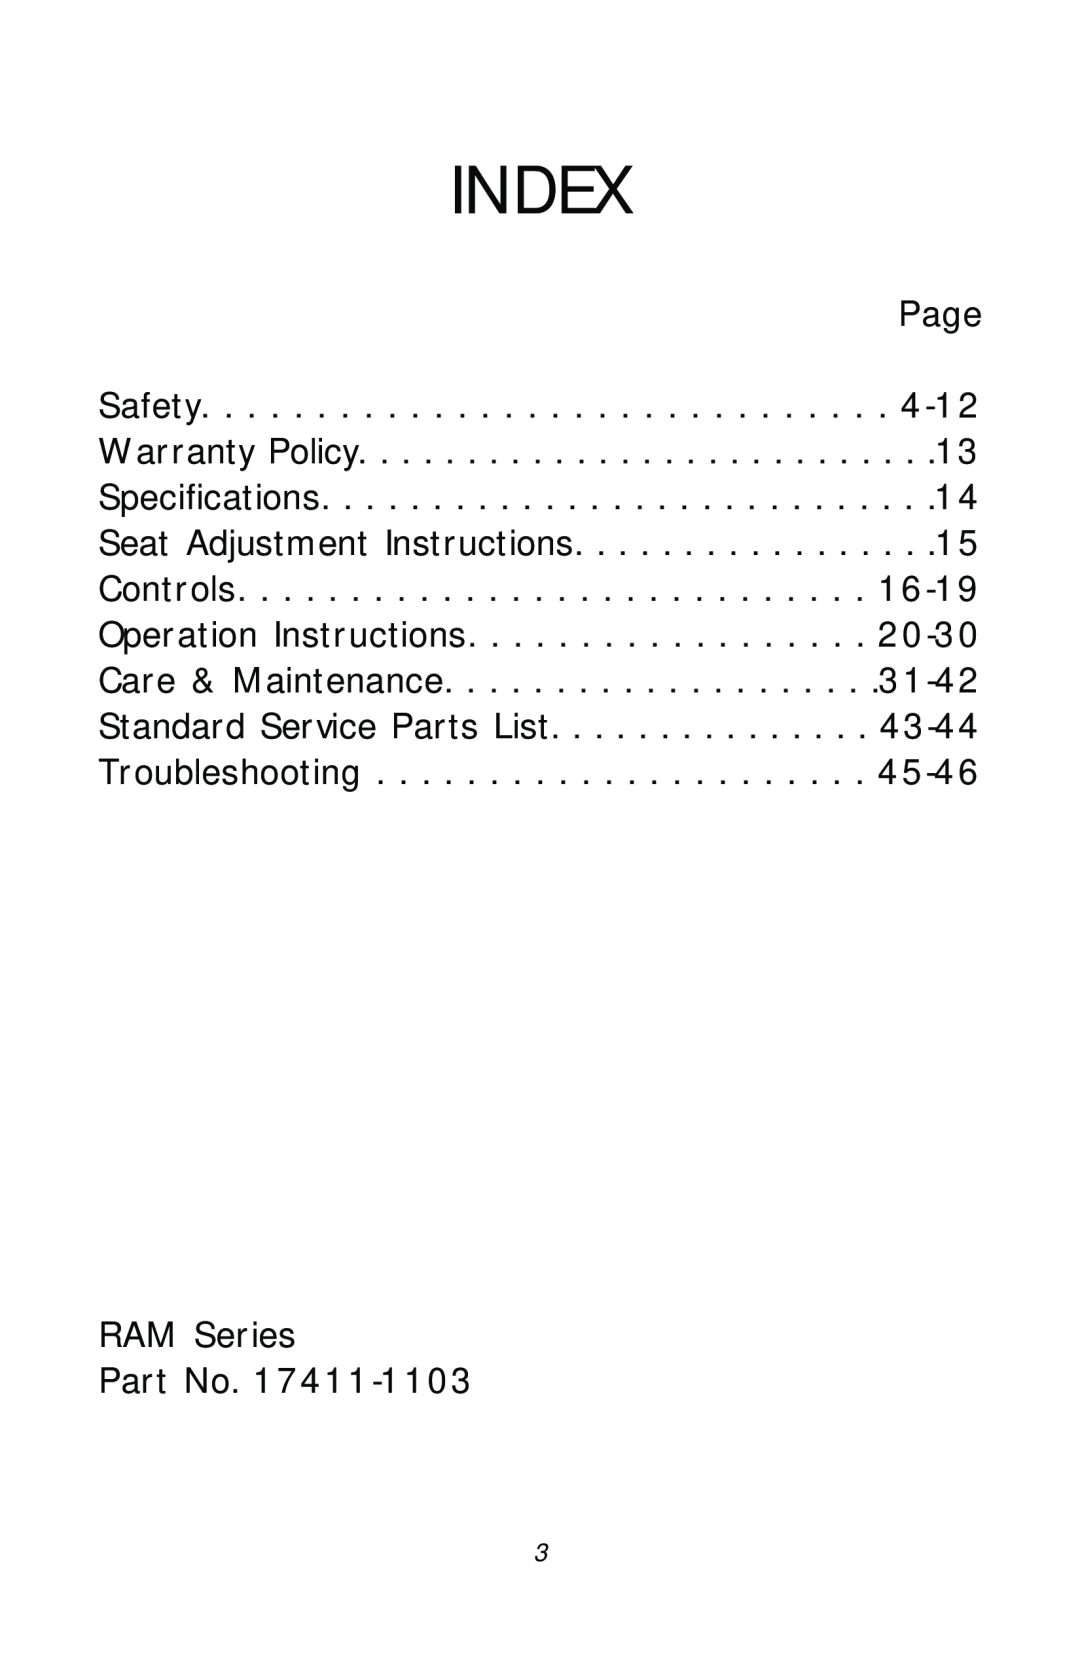 Dixon 17411-1103, ZTR RAM 50 manual Index 